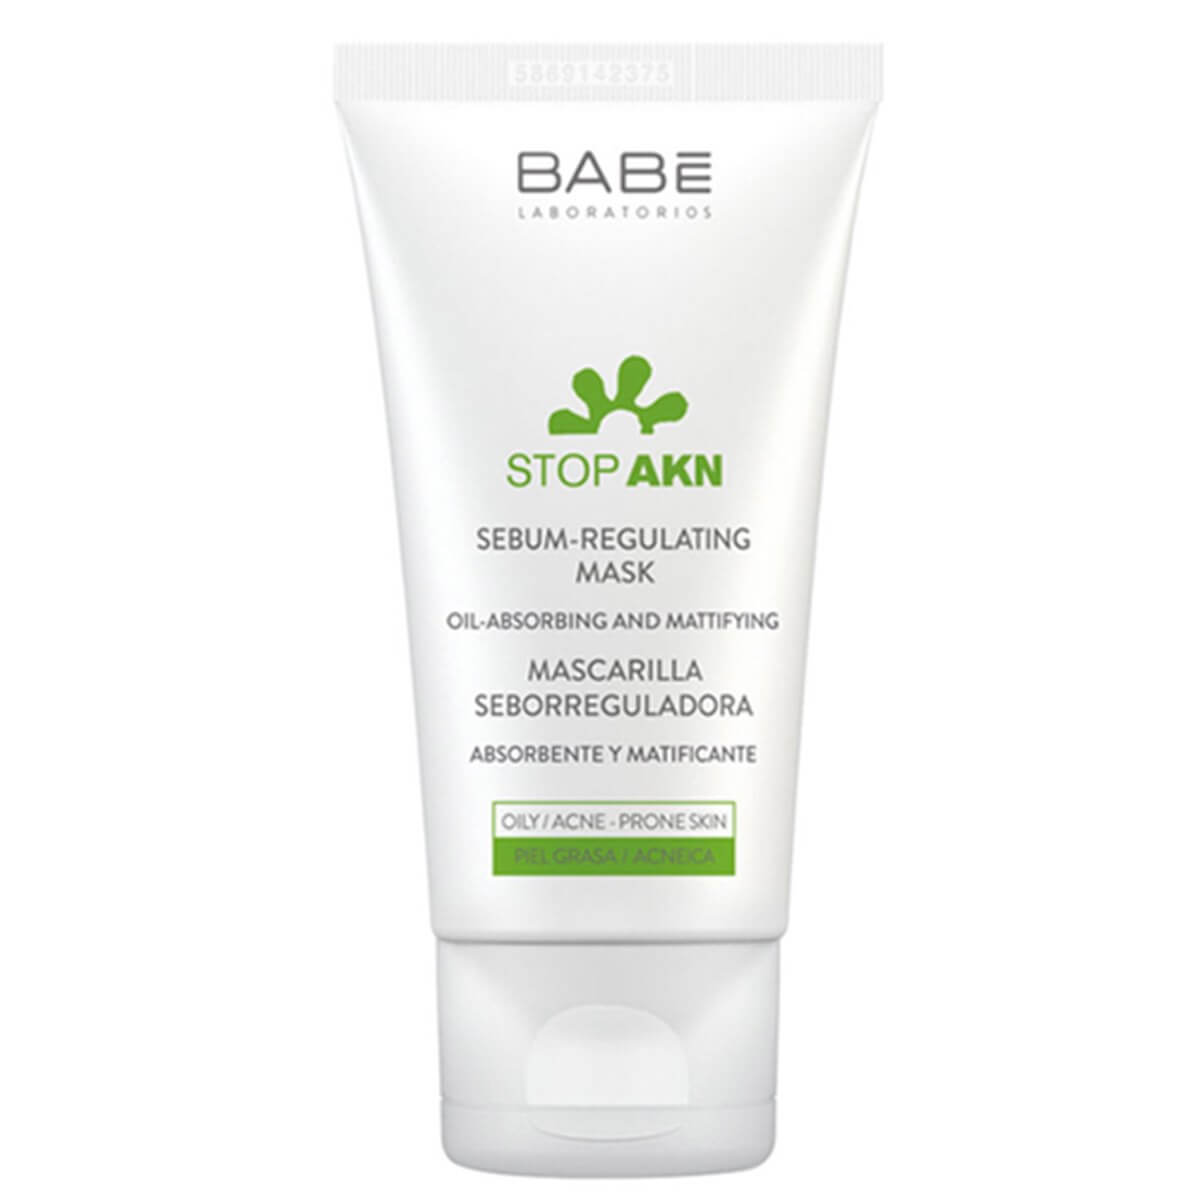 Babe Stop-Akn Sebum-Regulating Mask 50 ml